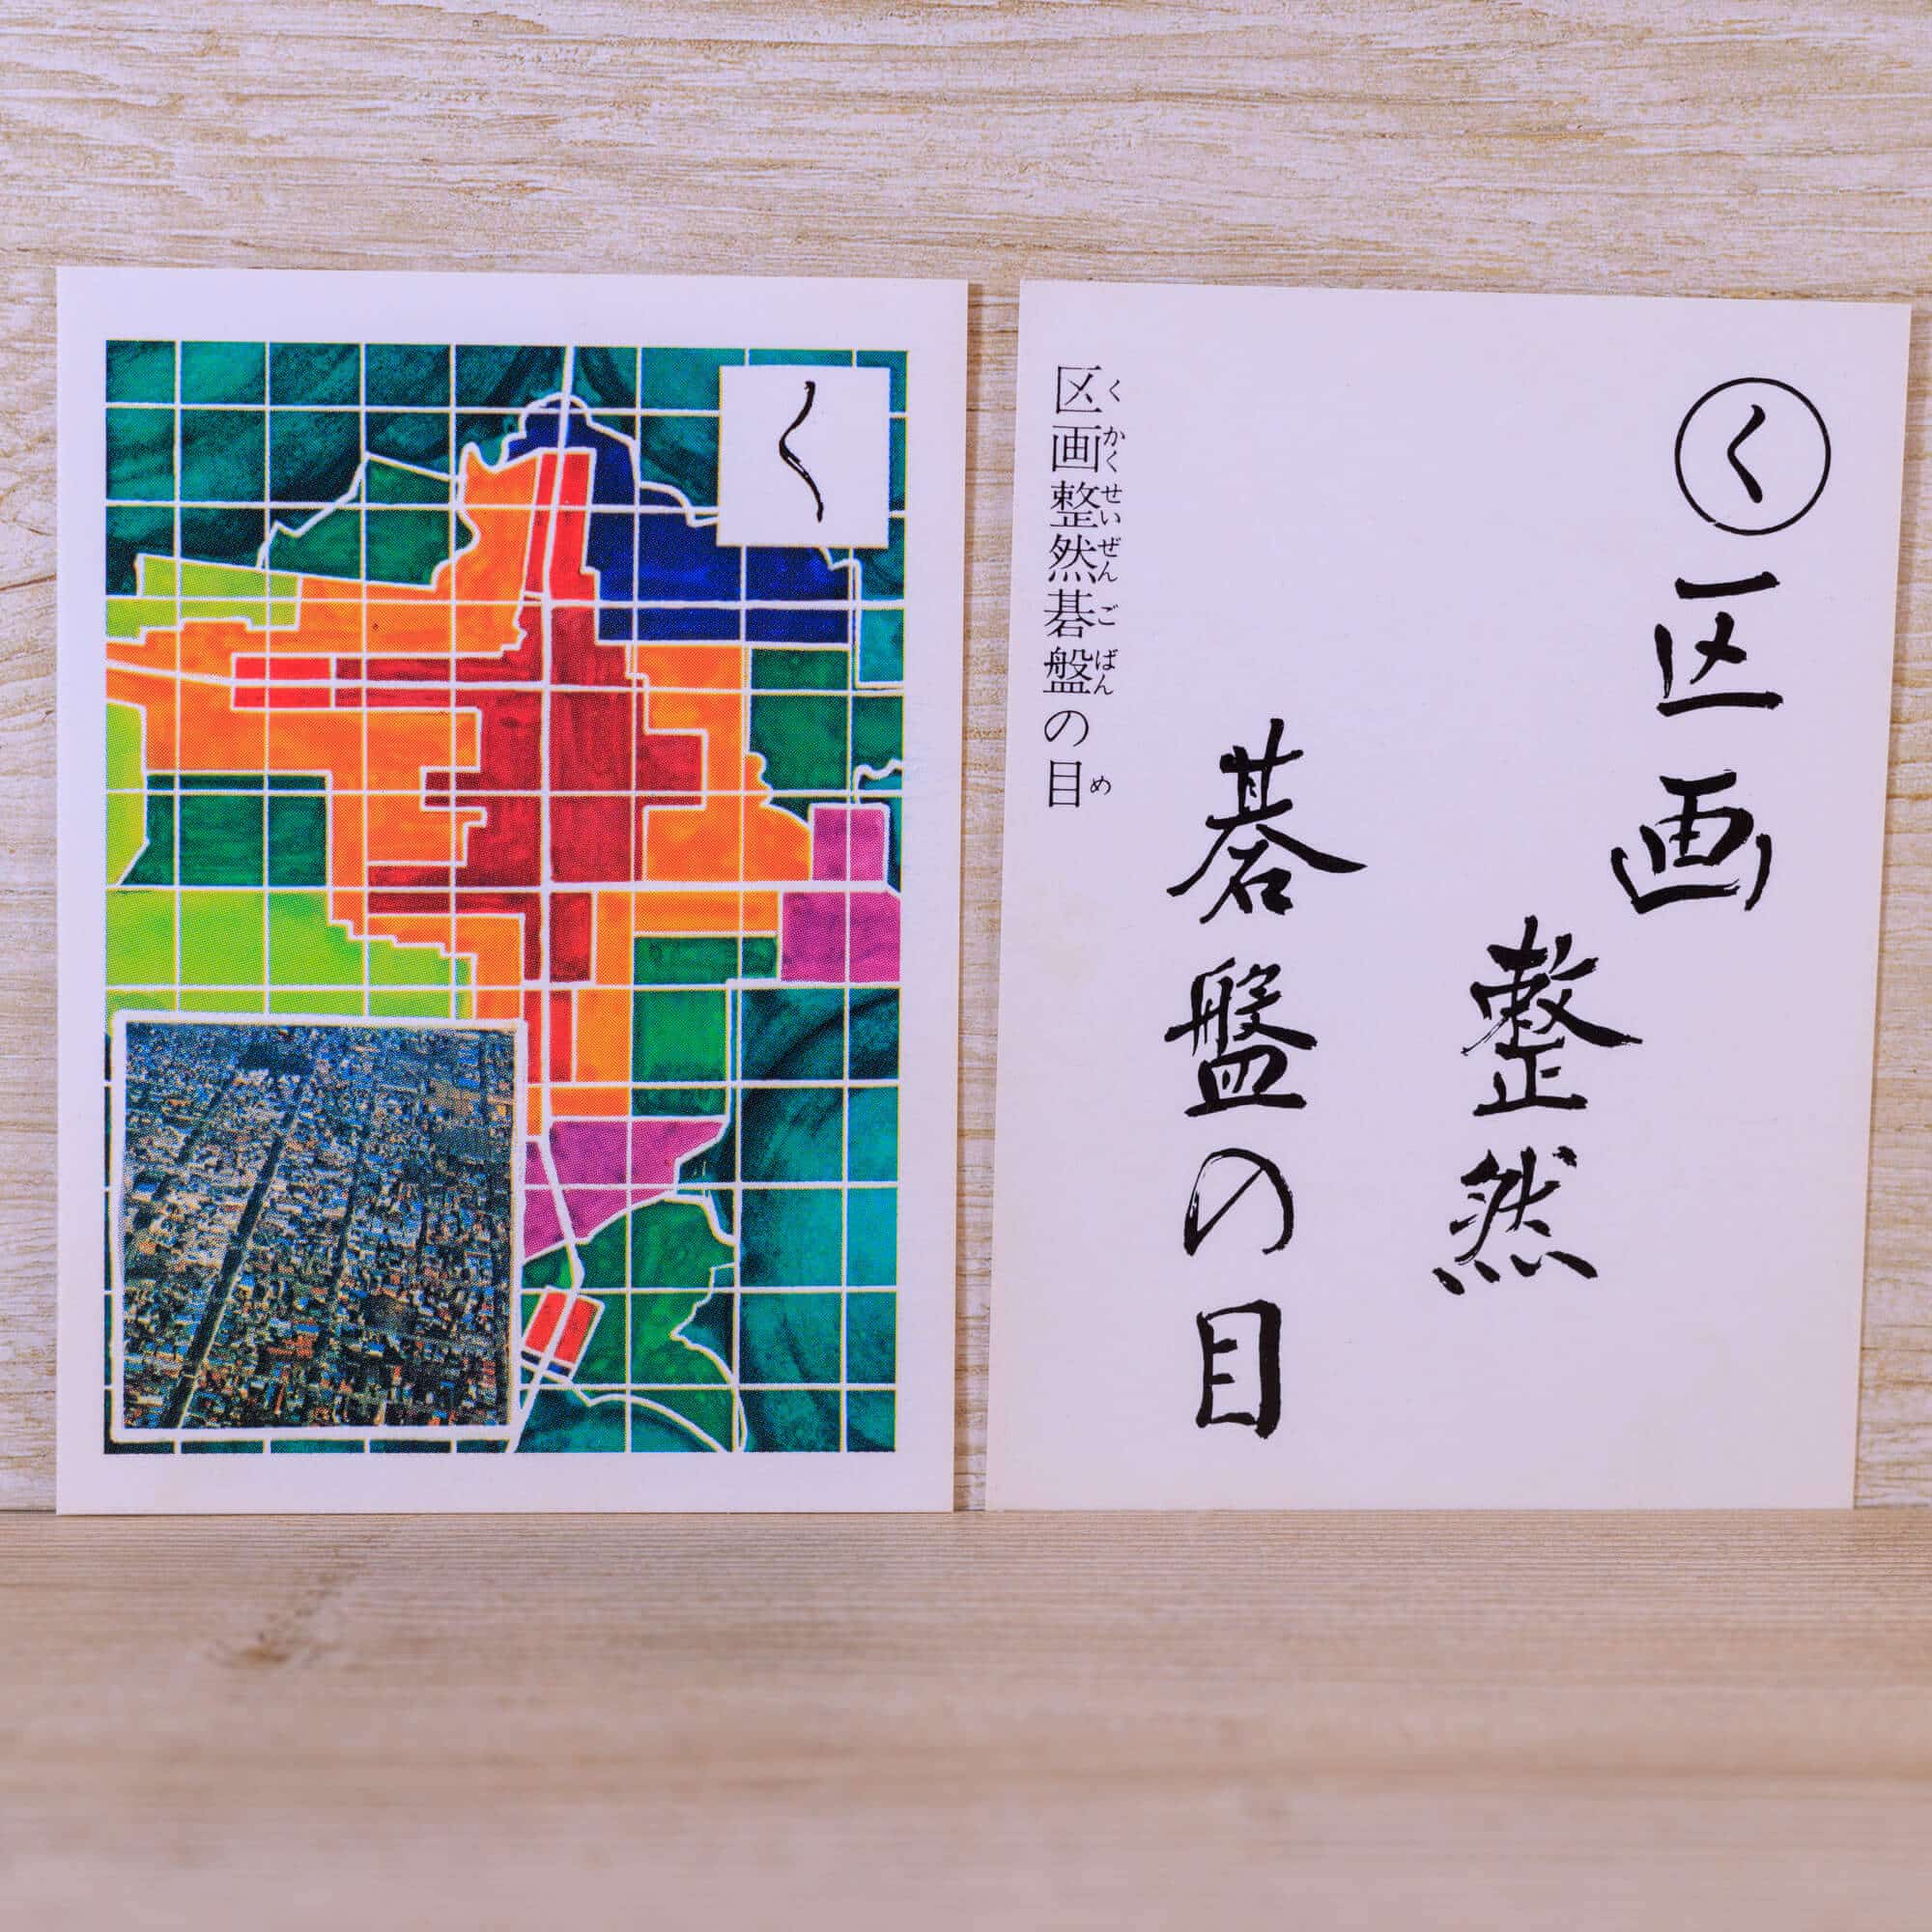 く-区画整然碁盤の目-説明-十和田かるた1977